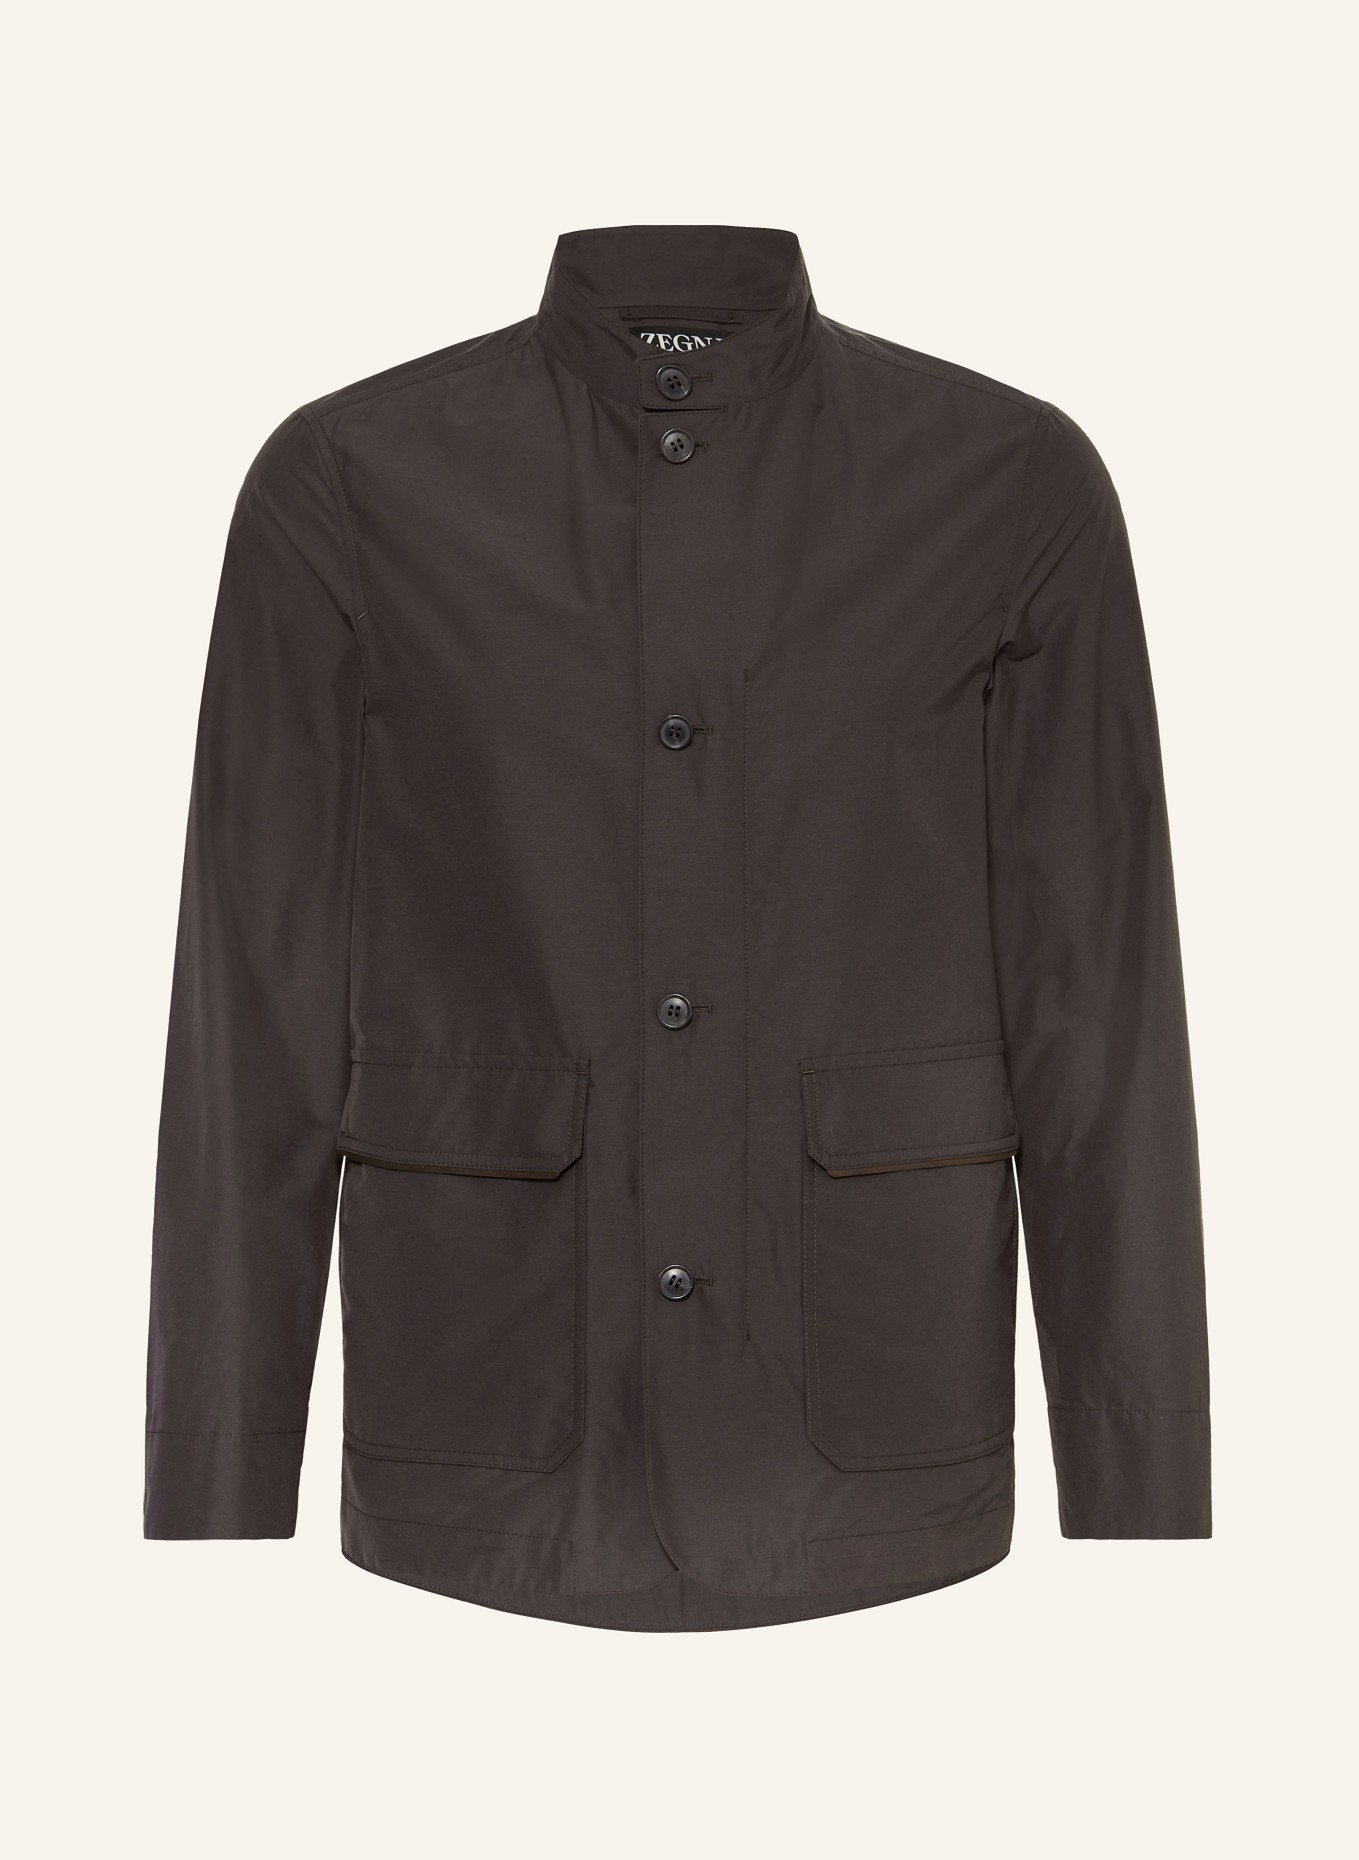 ZEGNA Jacket, Color: DARK BROWN (Image 1)